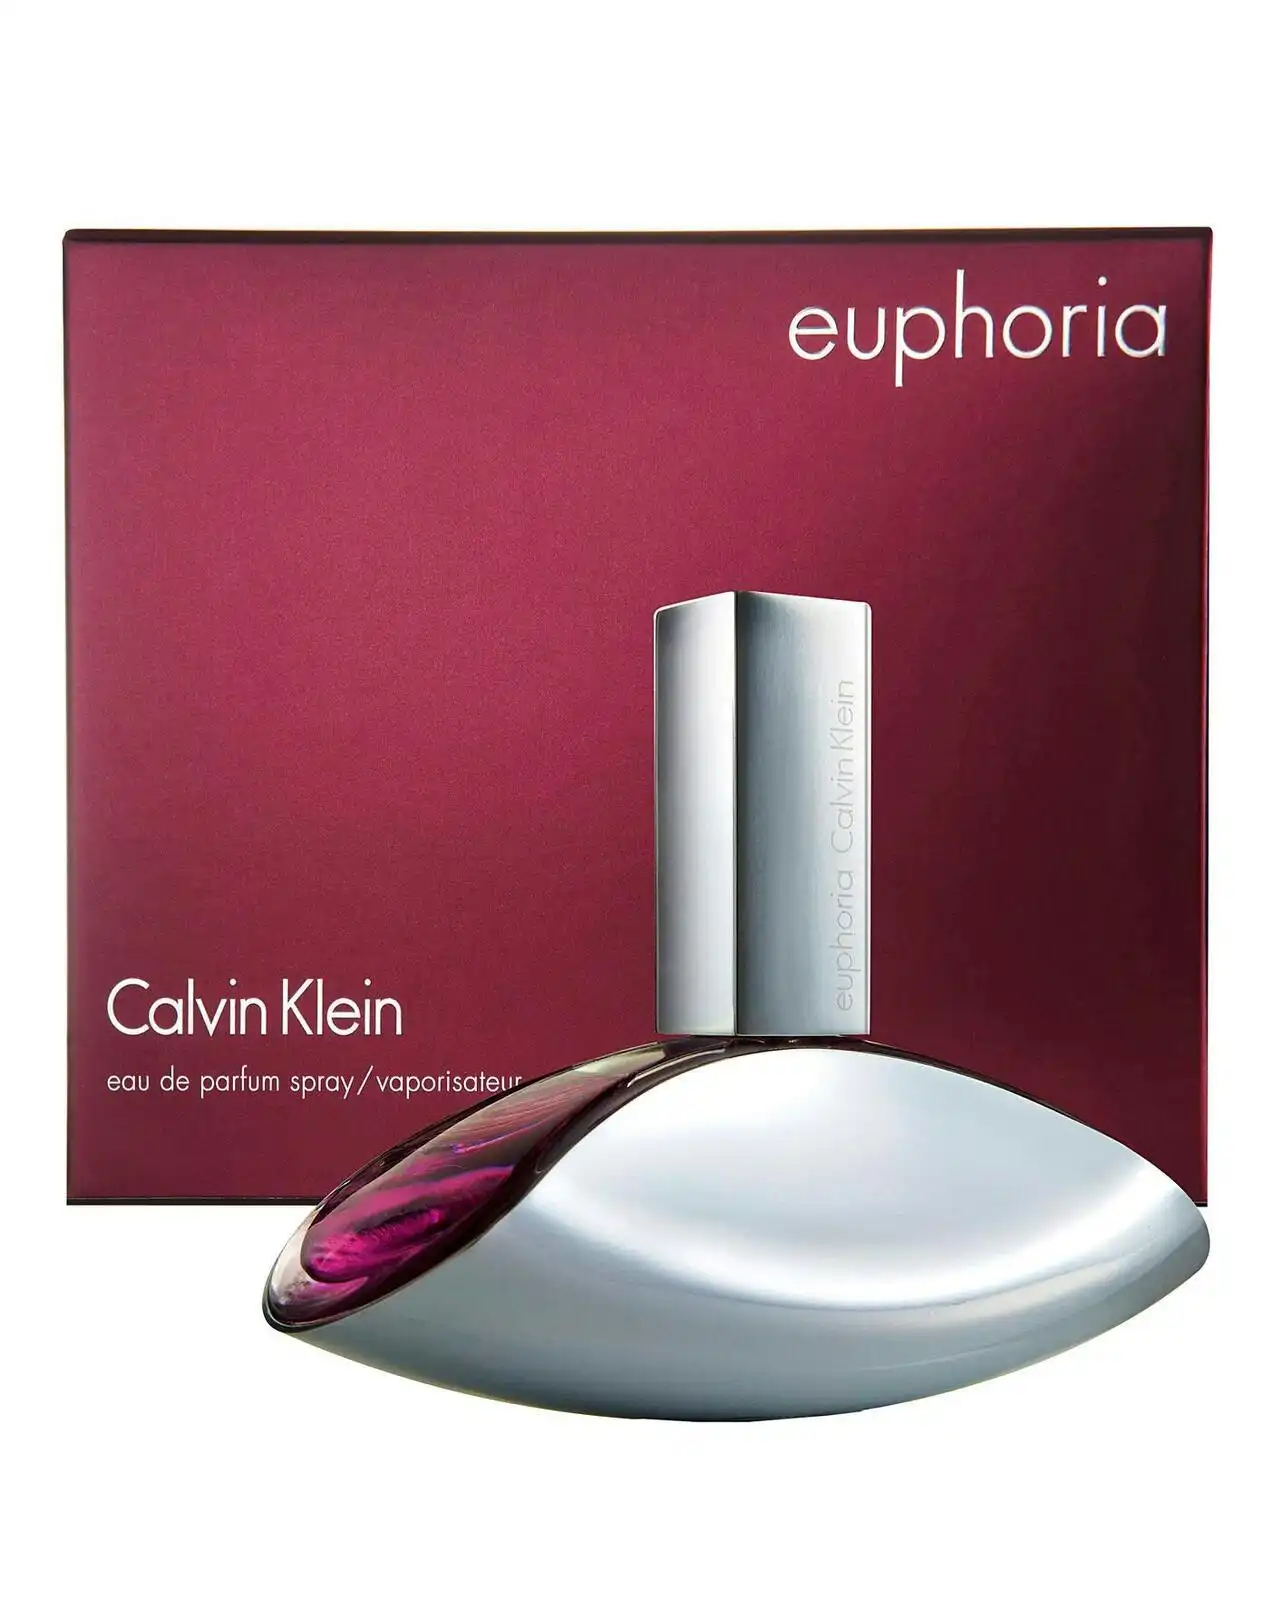 Euphoria by Calvin Klein